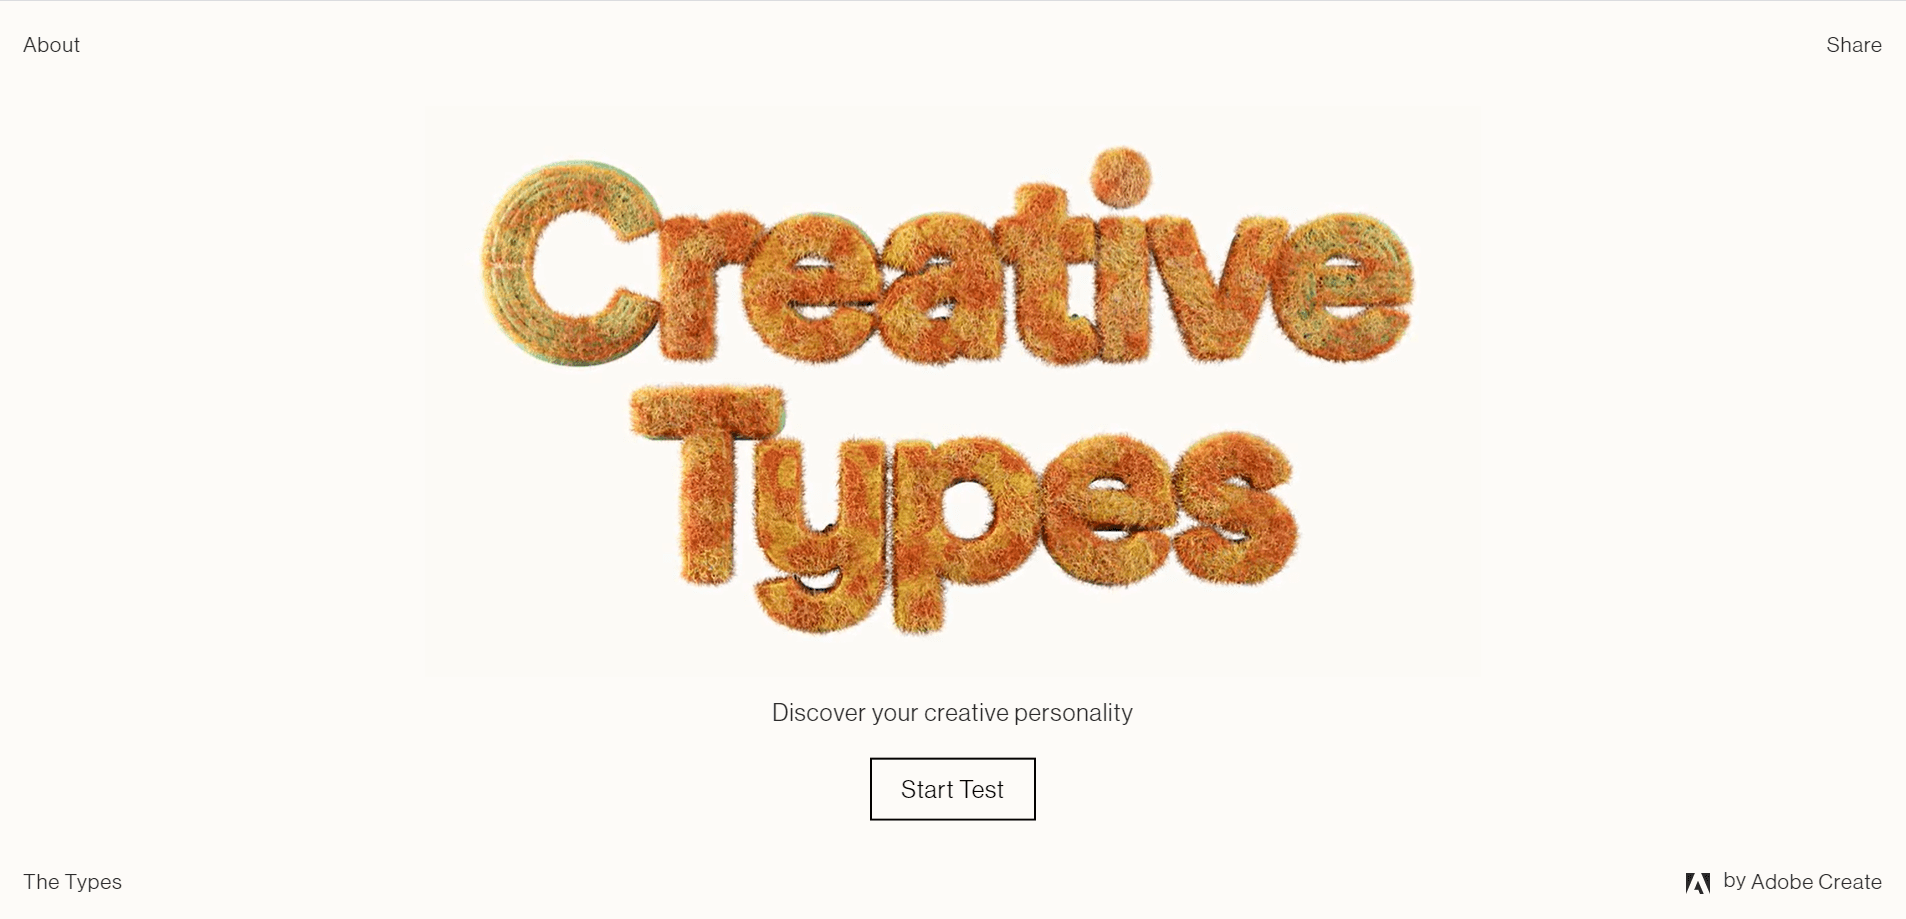 Adobe’s microsite Creative Types